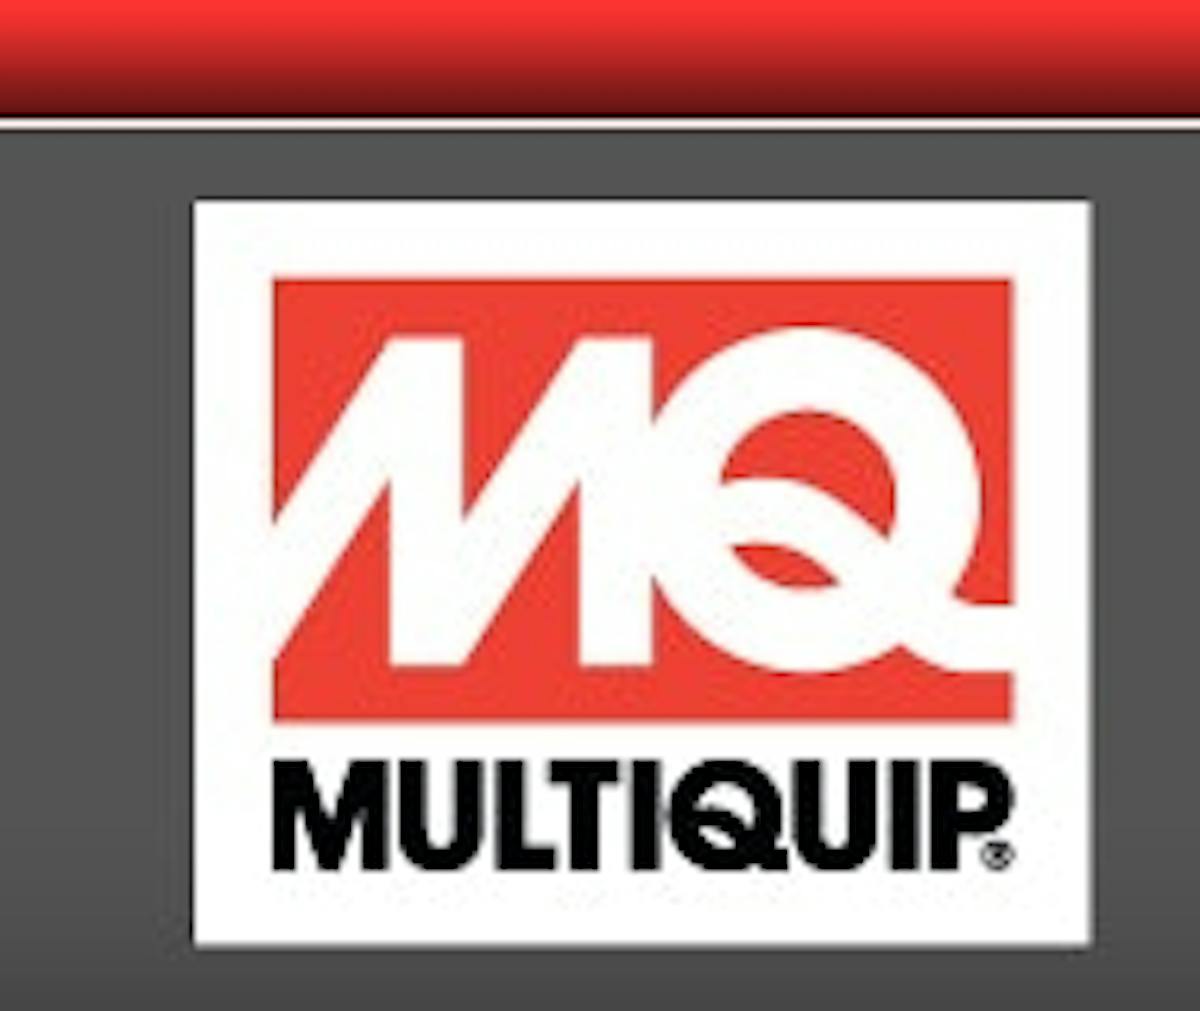 multiquip-logo